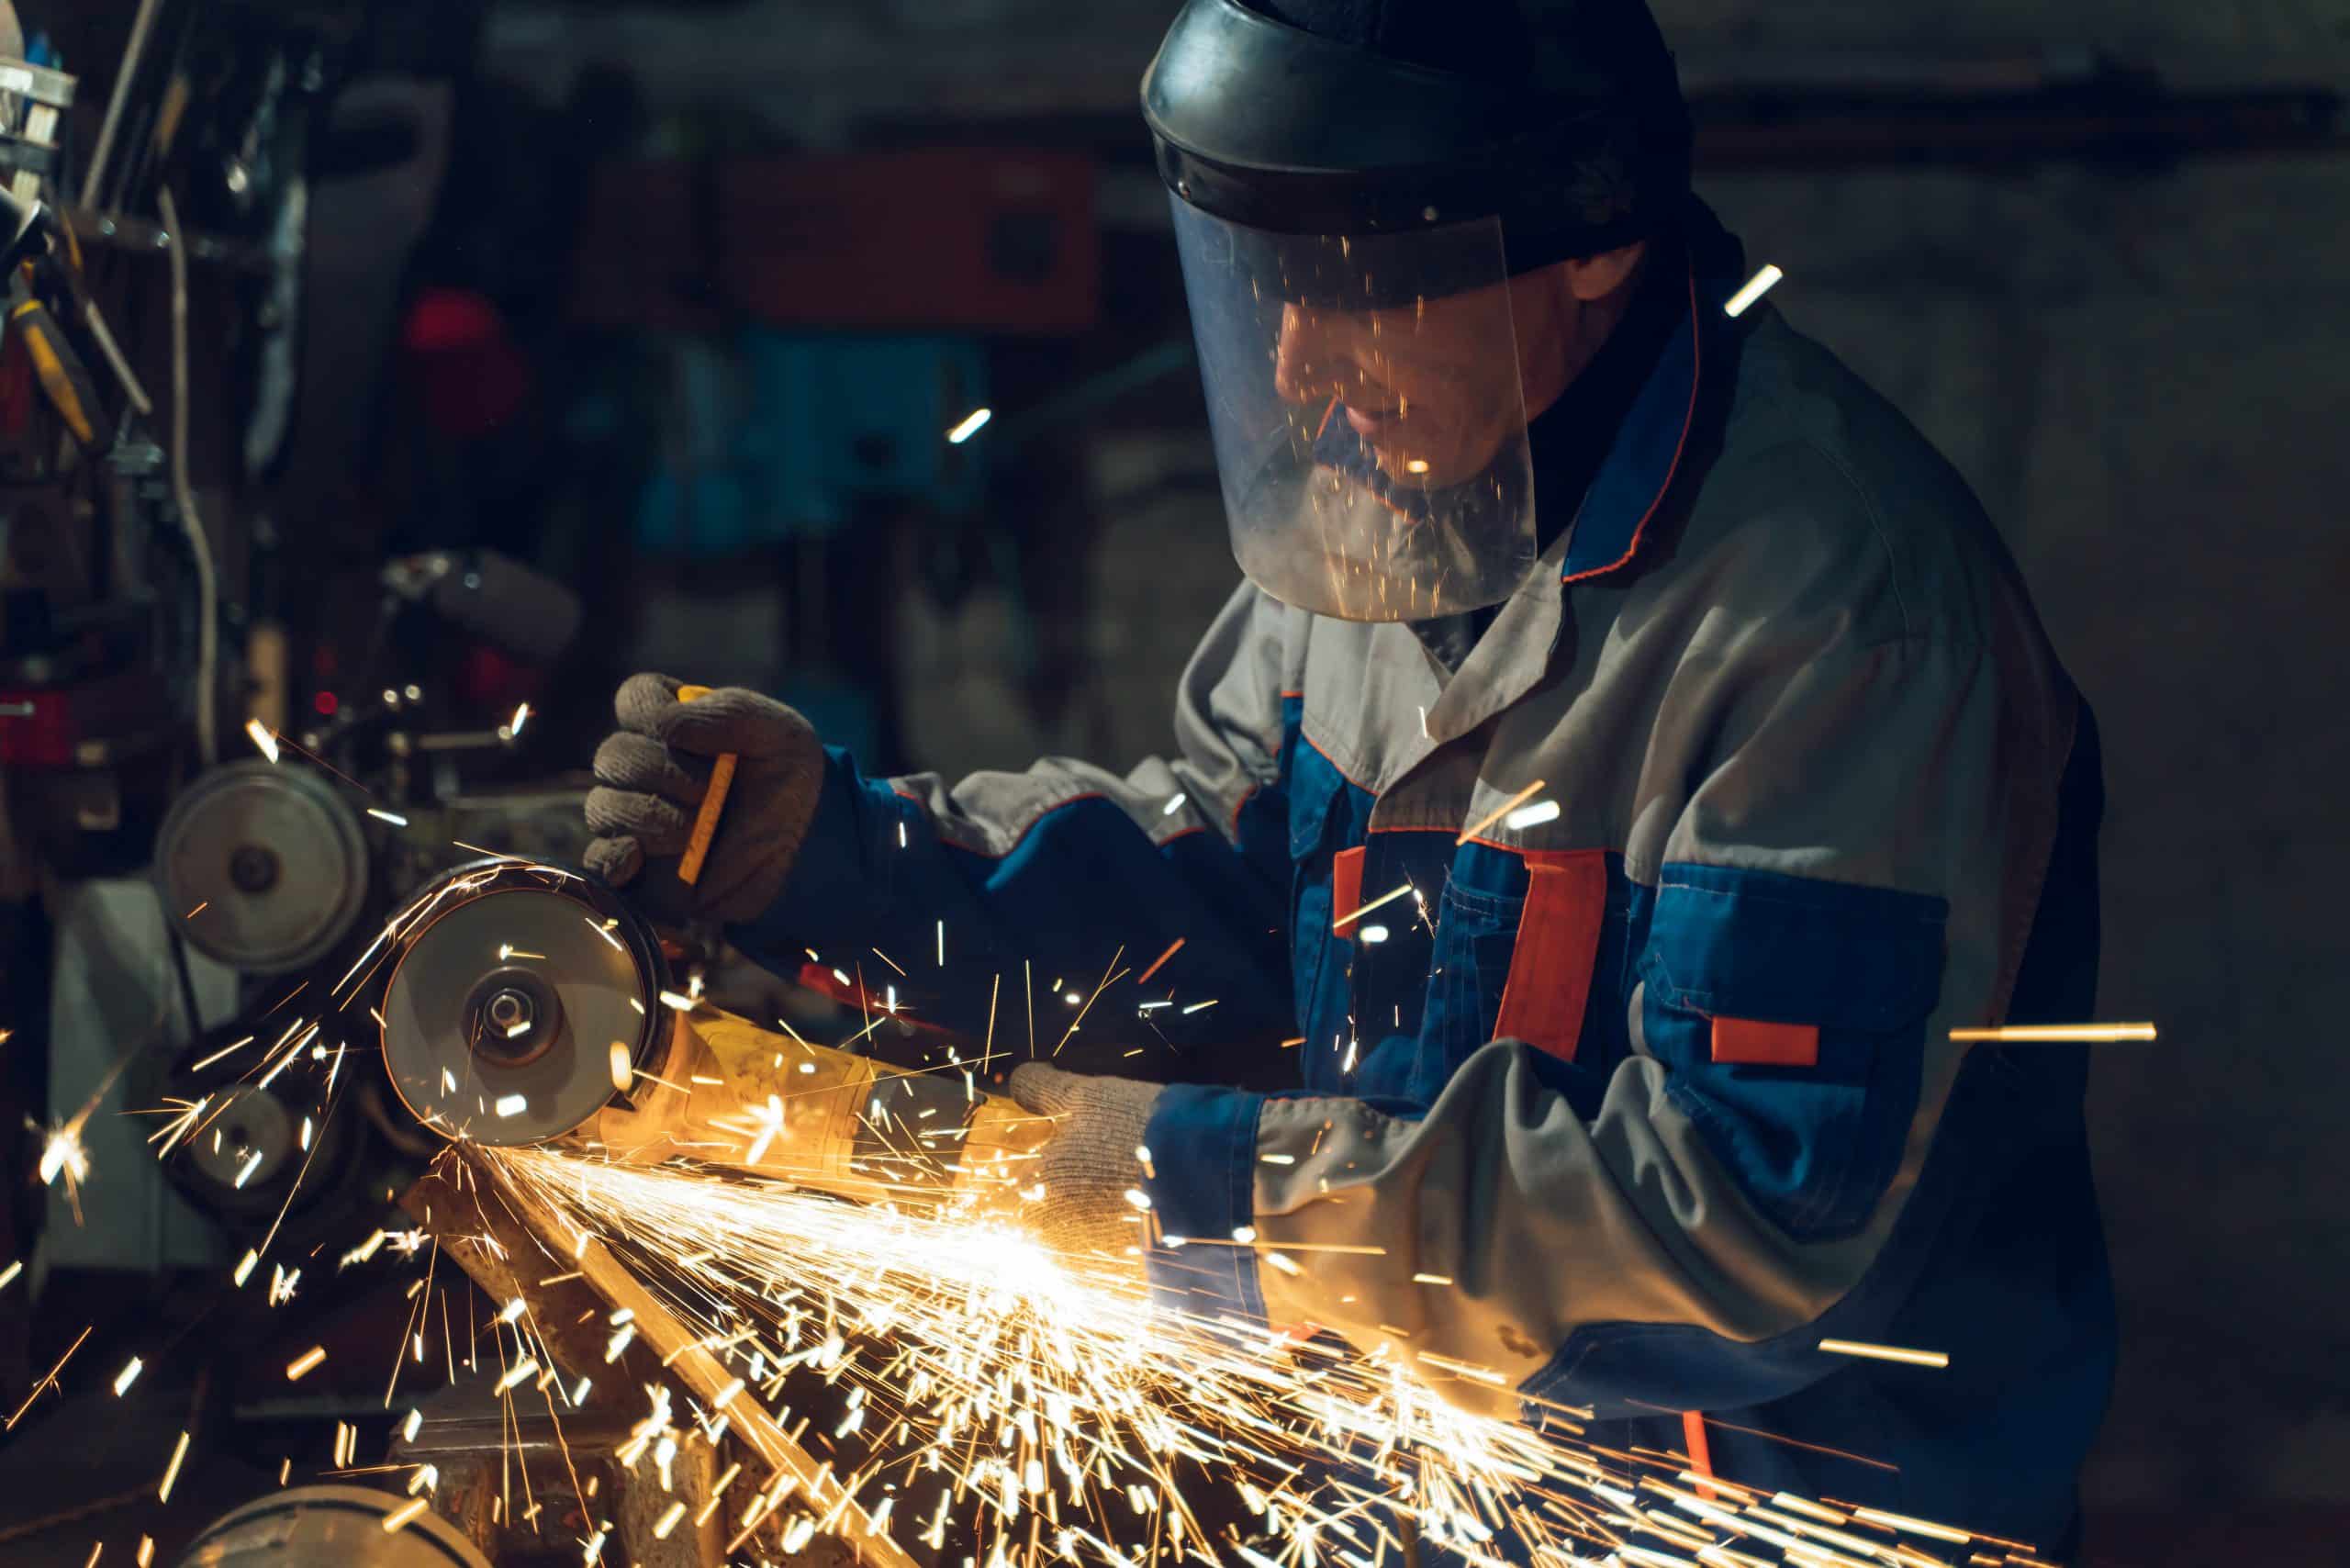 Serrurier Châlons-en-Champagne - Un serrurier travaille dans un atelier de métal